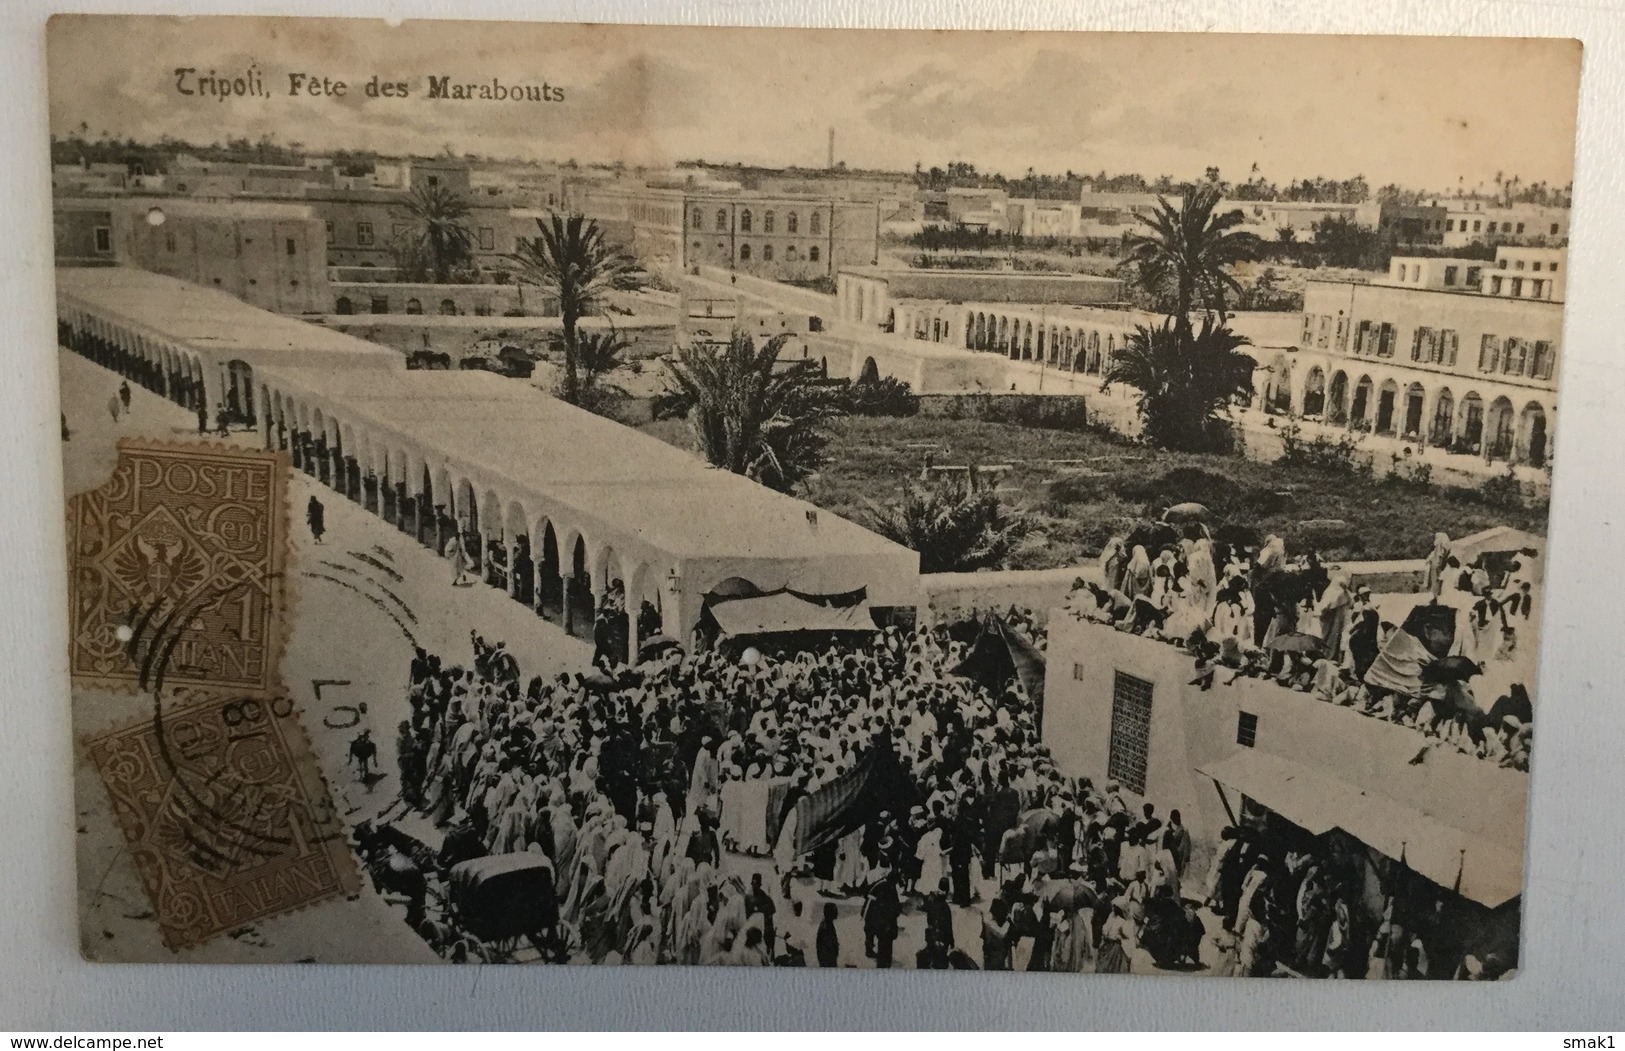 AK  LIBYA  TRIPOLI  FETE DES MARABOUTS  1907. - Libye